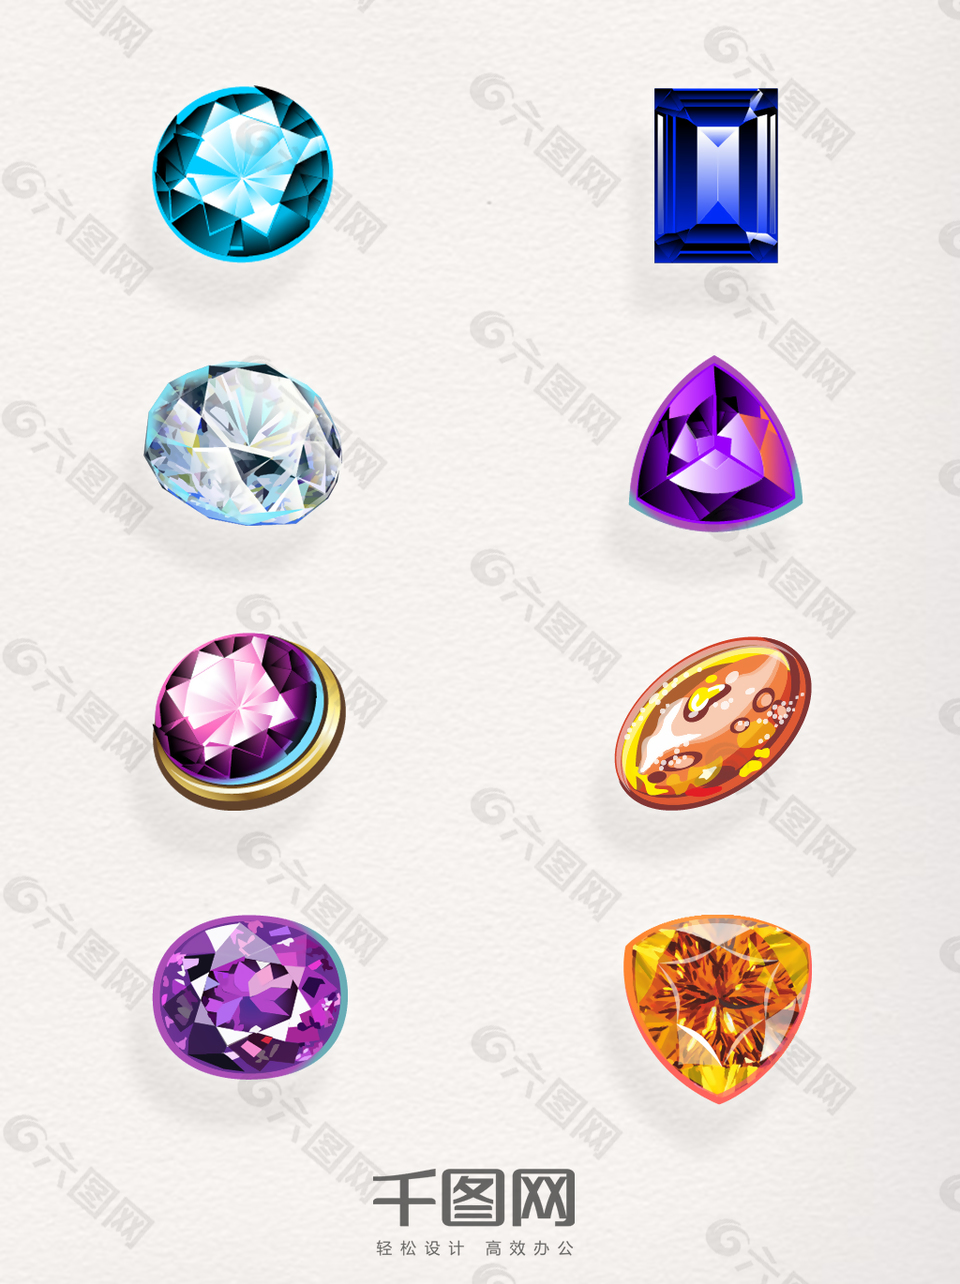 一组彩色钻石设计元素